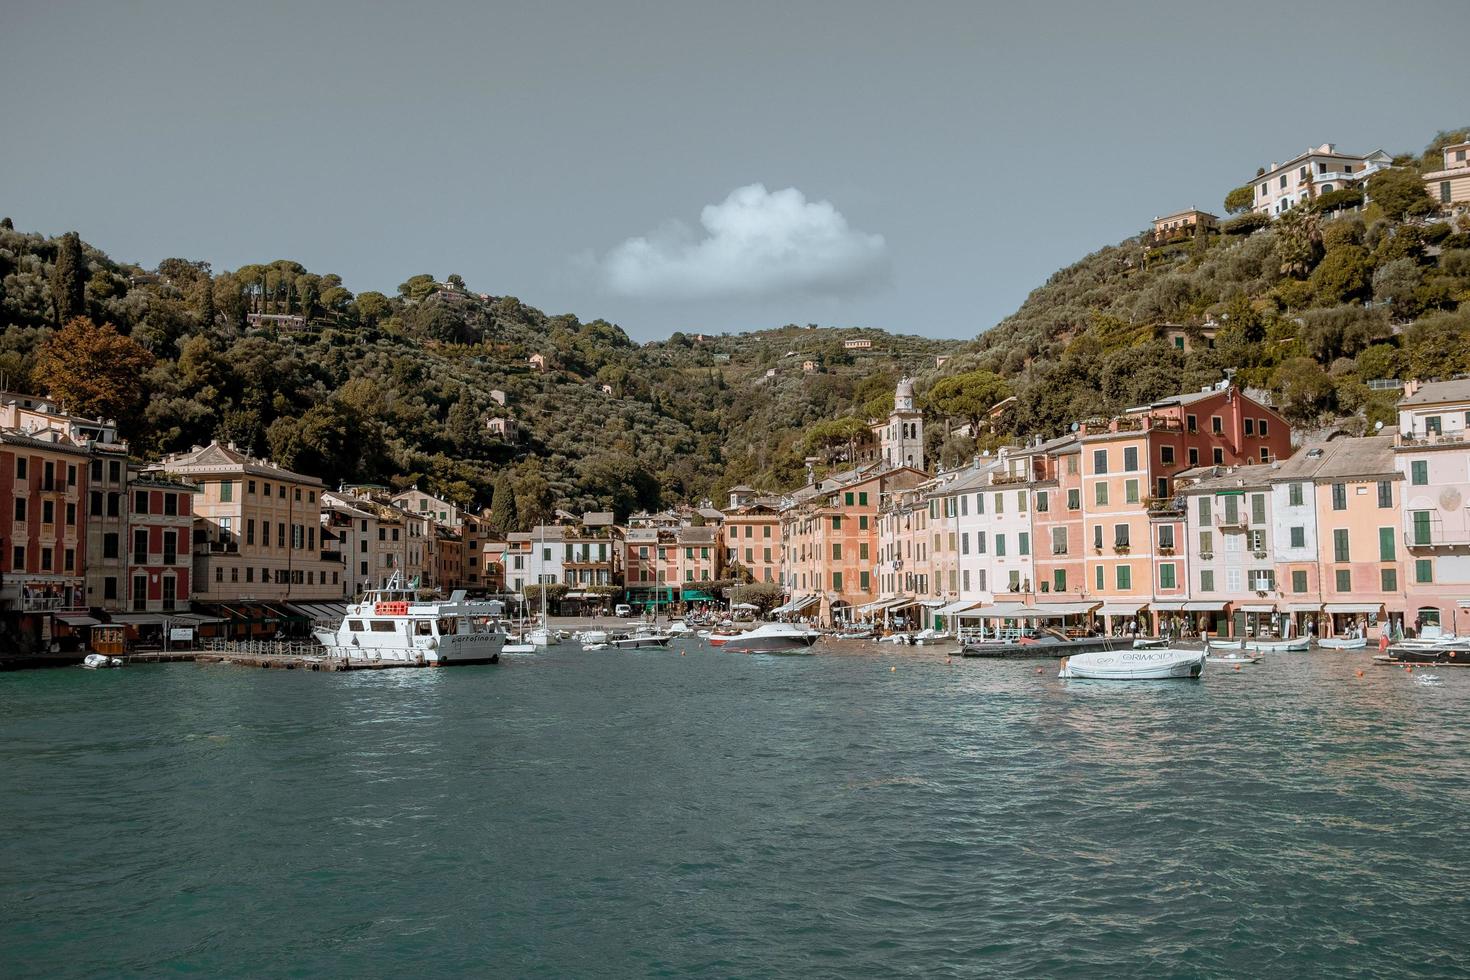 Portofino, Italy, 2020 - Boats in harbor near city photo